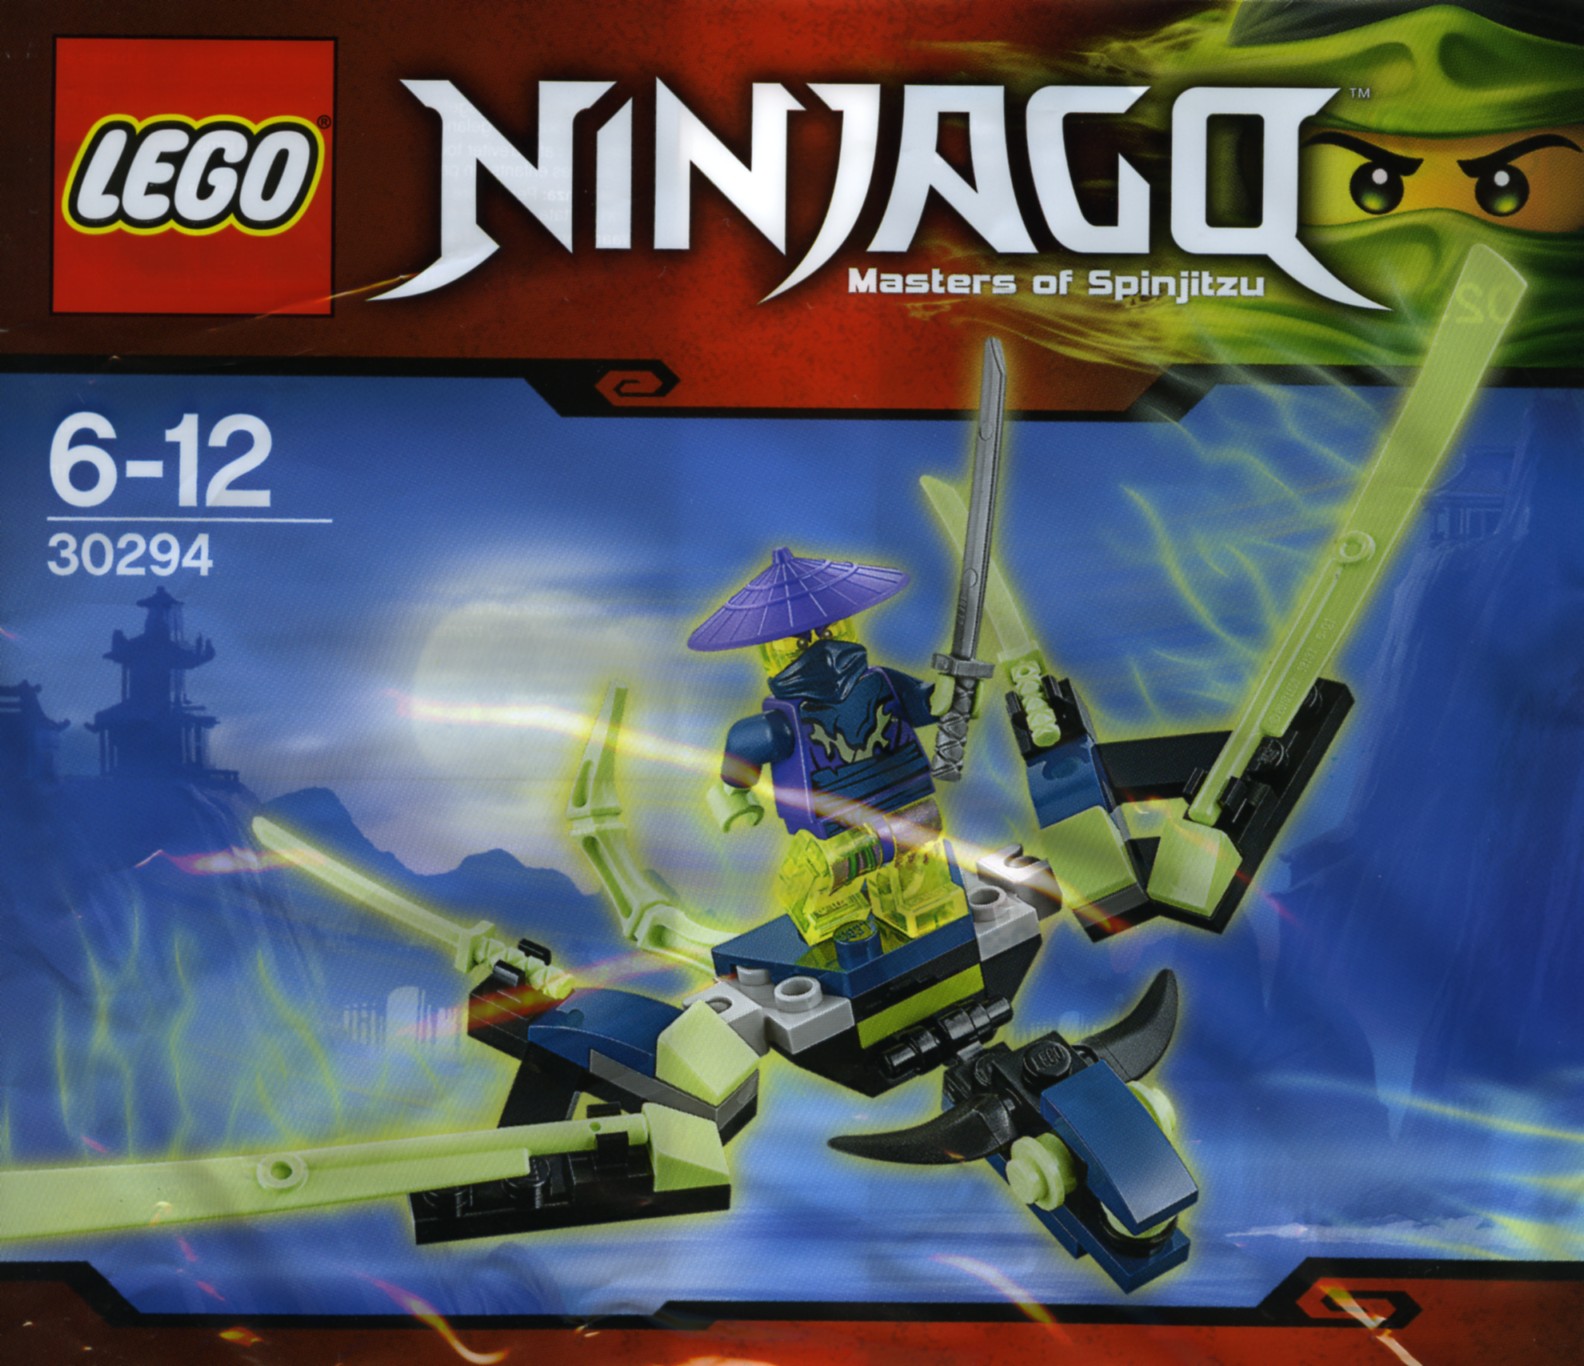 New Ninago free in Toys Us | Brickset: LEGO set guide and database